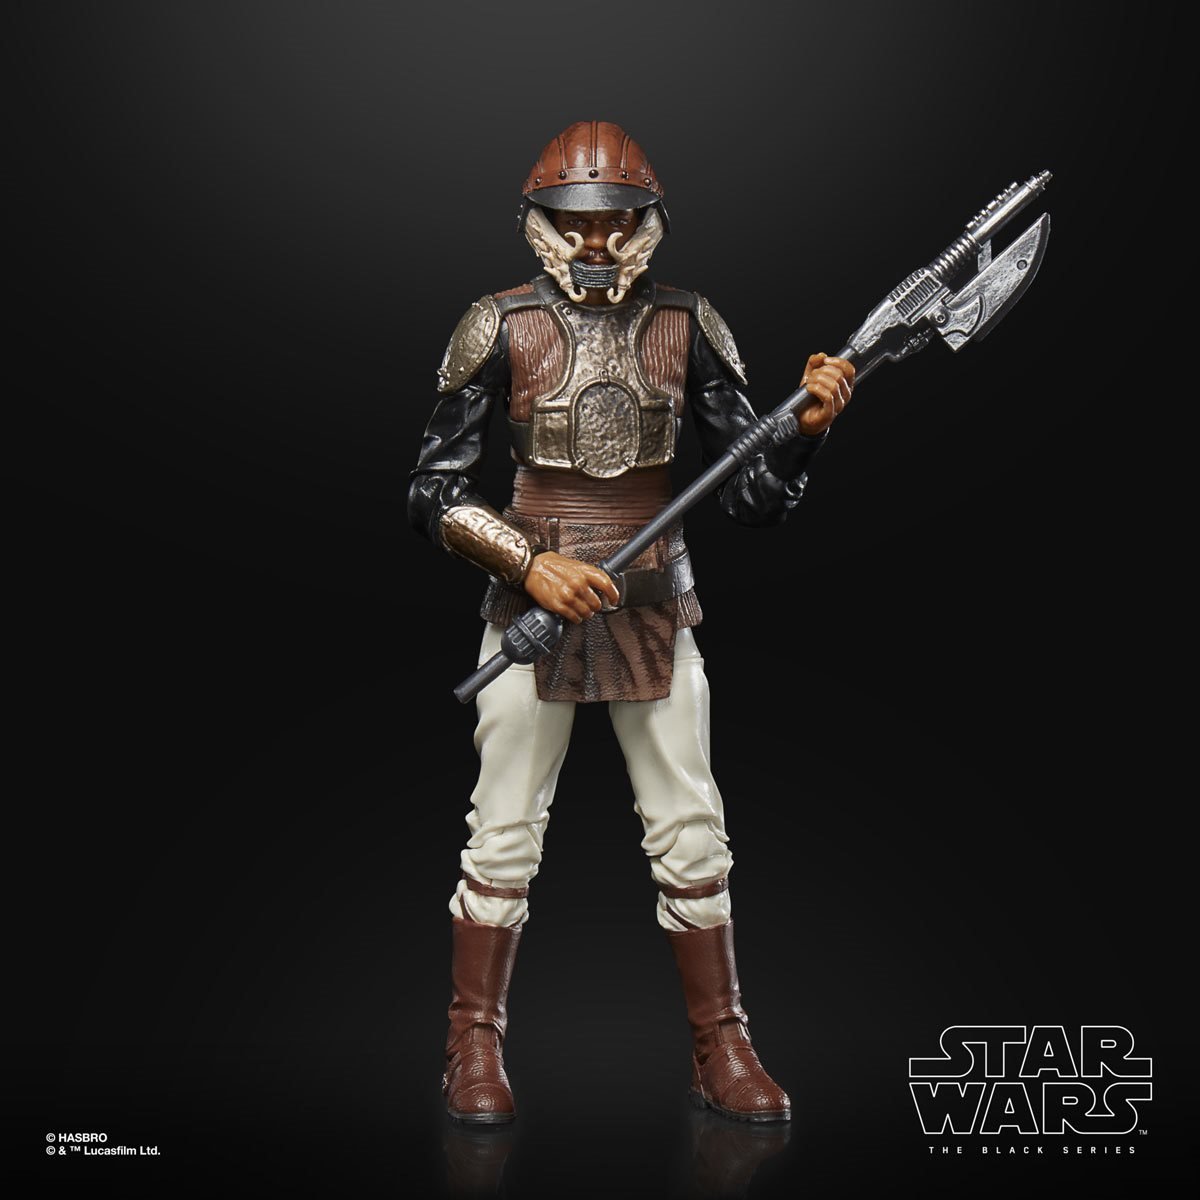 Star Wars Gifts: Star Wars Figurines & Merchandise